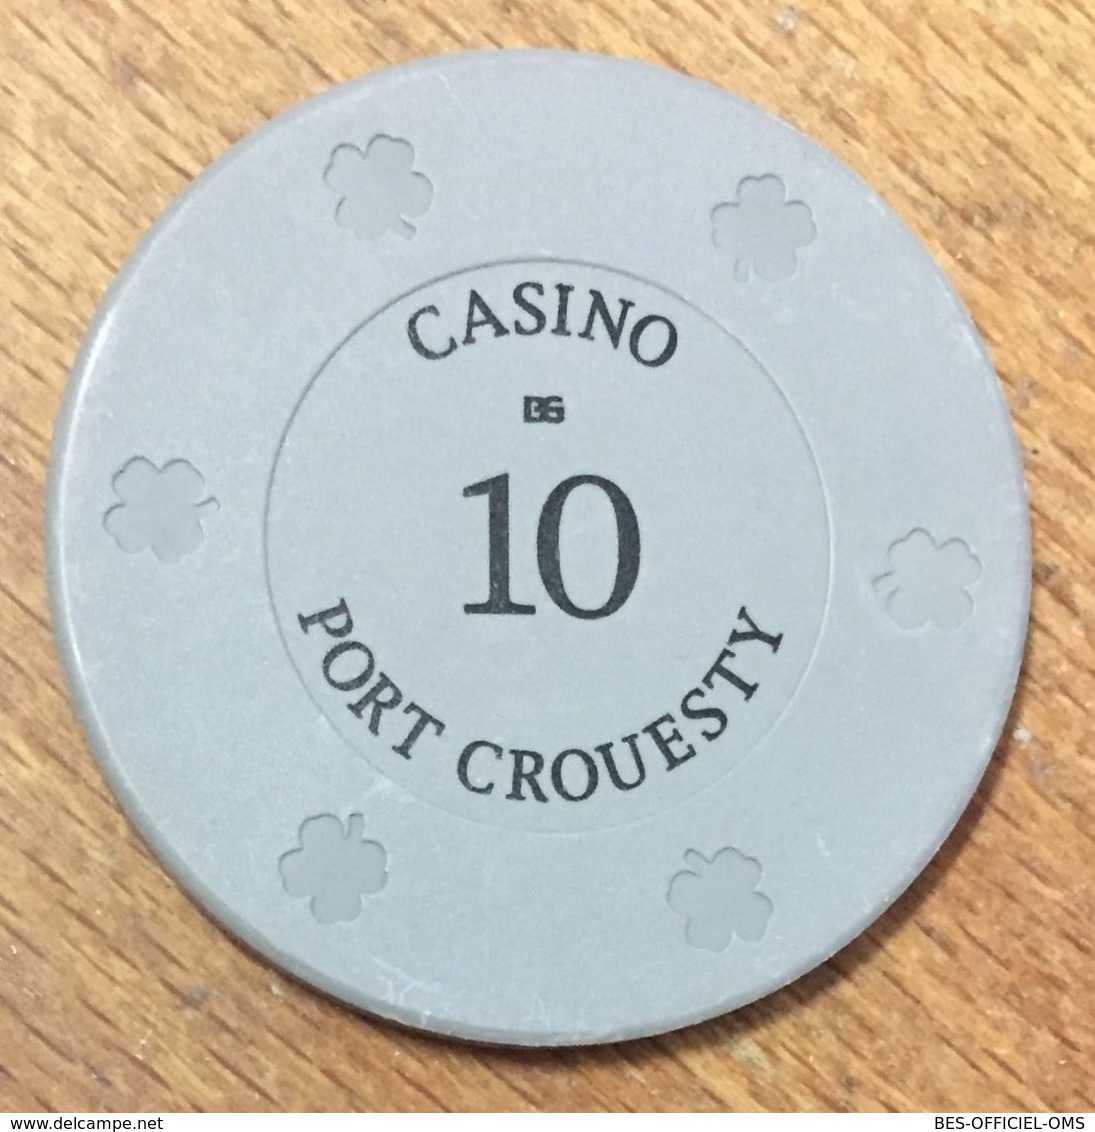 56 PORT CROESTY CASINO JETON DE 50 FRANCS CHIP TOKENS COINS GAMING - Casino